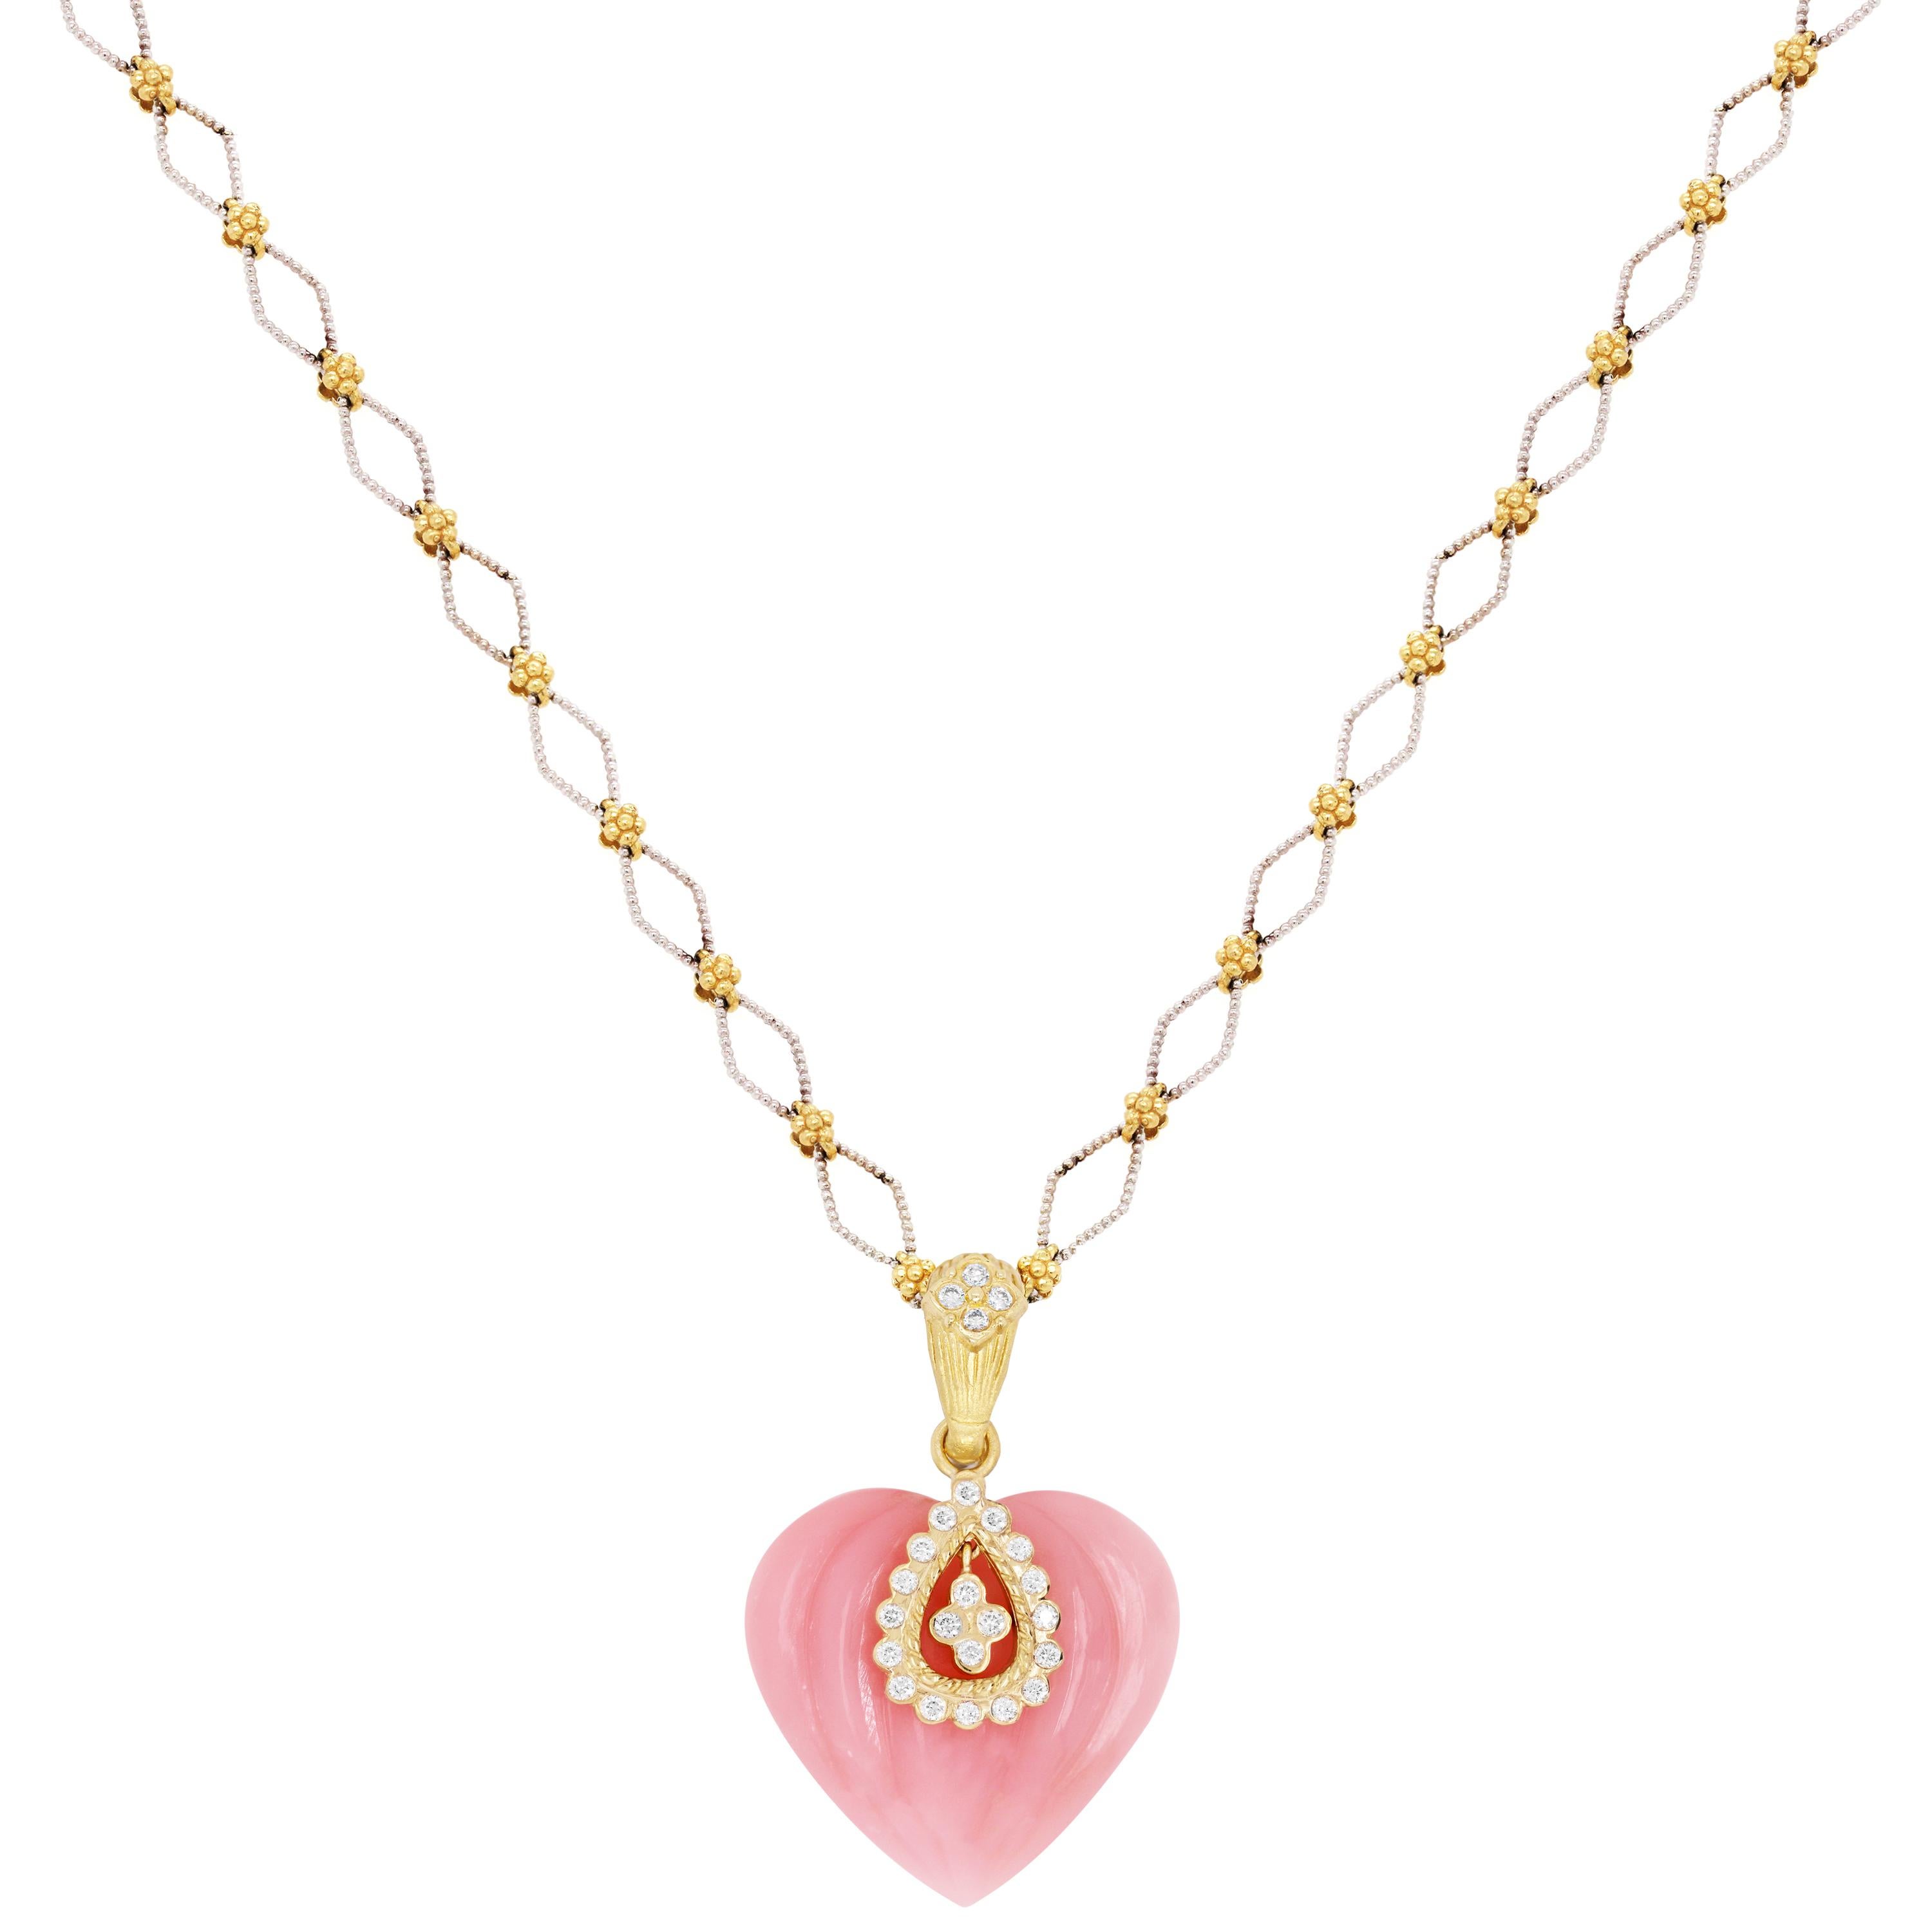 Stambolian Collier pendentif cœur en or et diamants avec opale du Pérou rose

Le pendentif en forme de cœur en opale rose est issu de la collection 